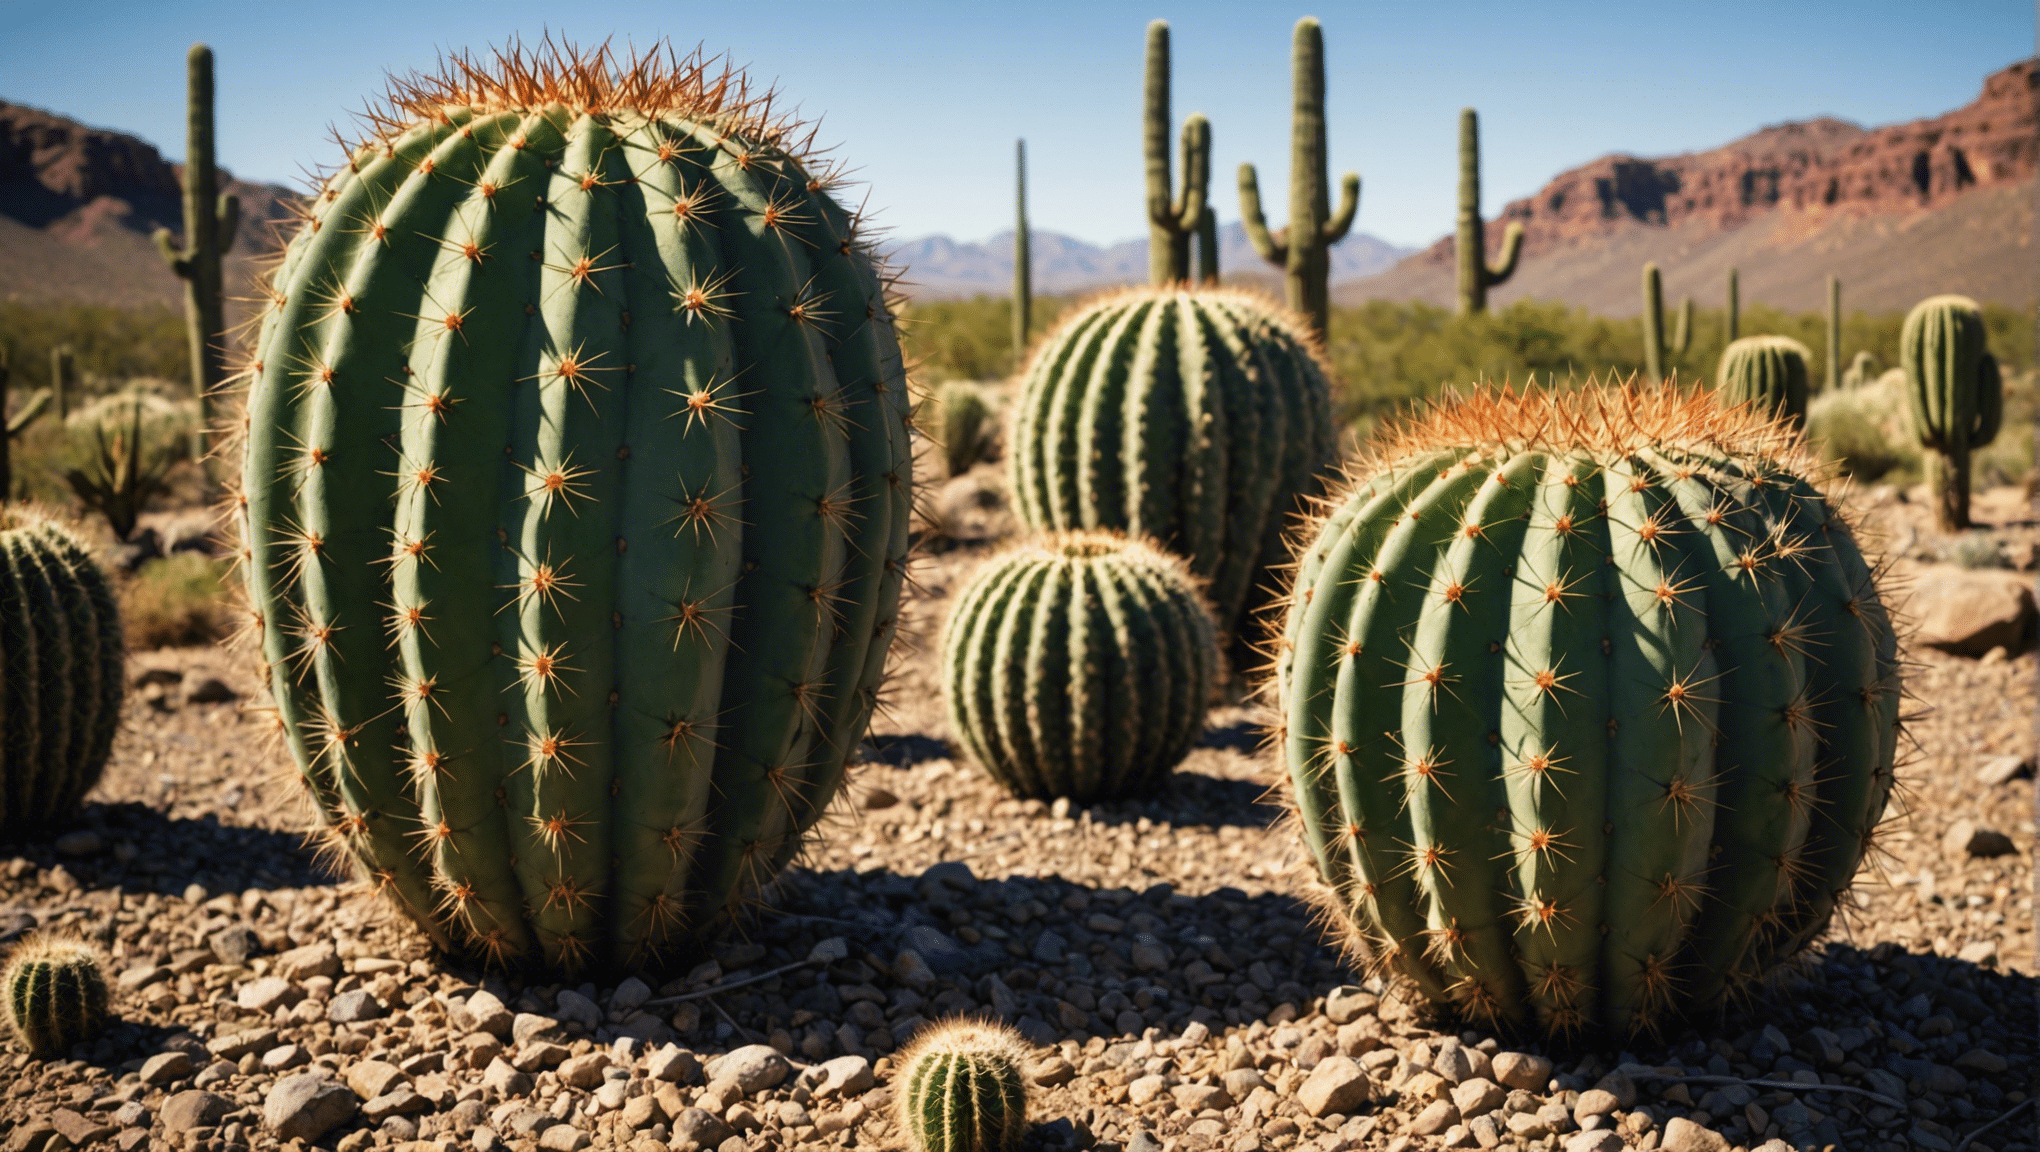 découvrez pourquoi les cactus sont si résistants dans des conditions extrêmes et comment ils surviennent dans des environnements hostiles.